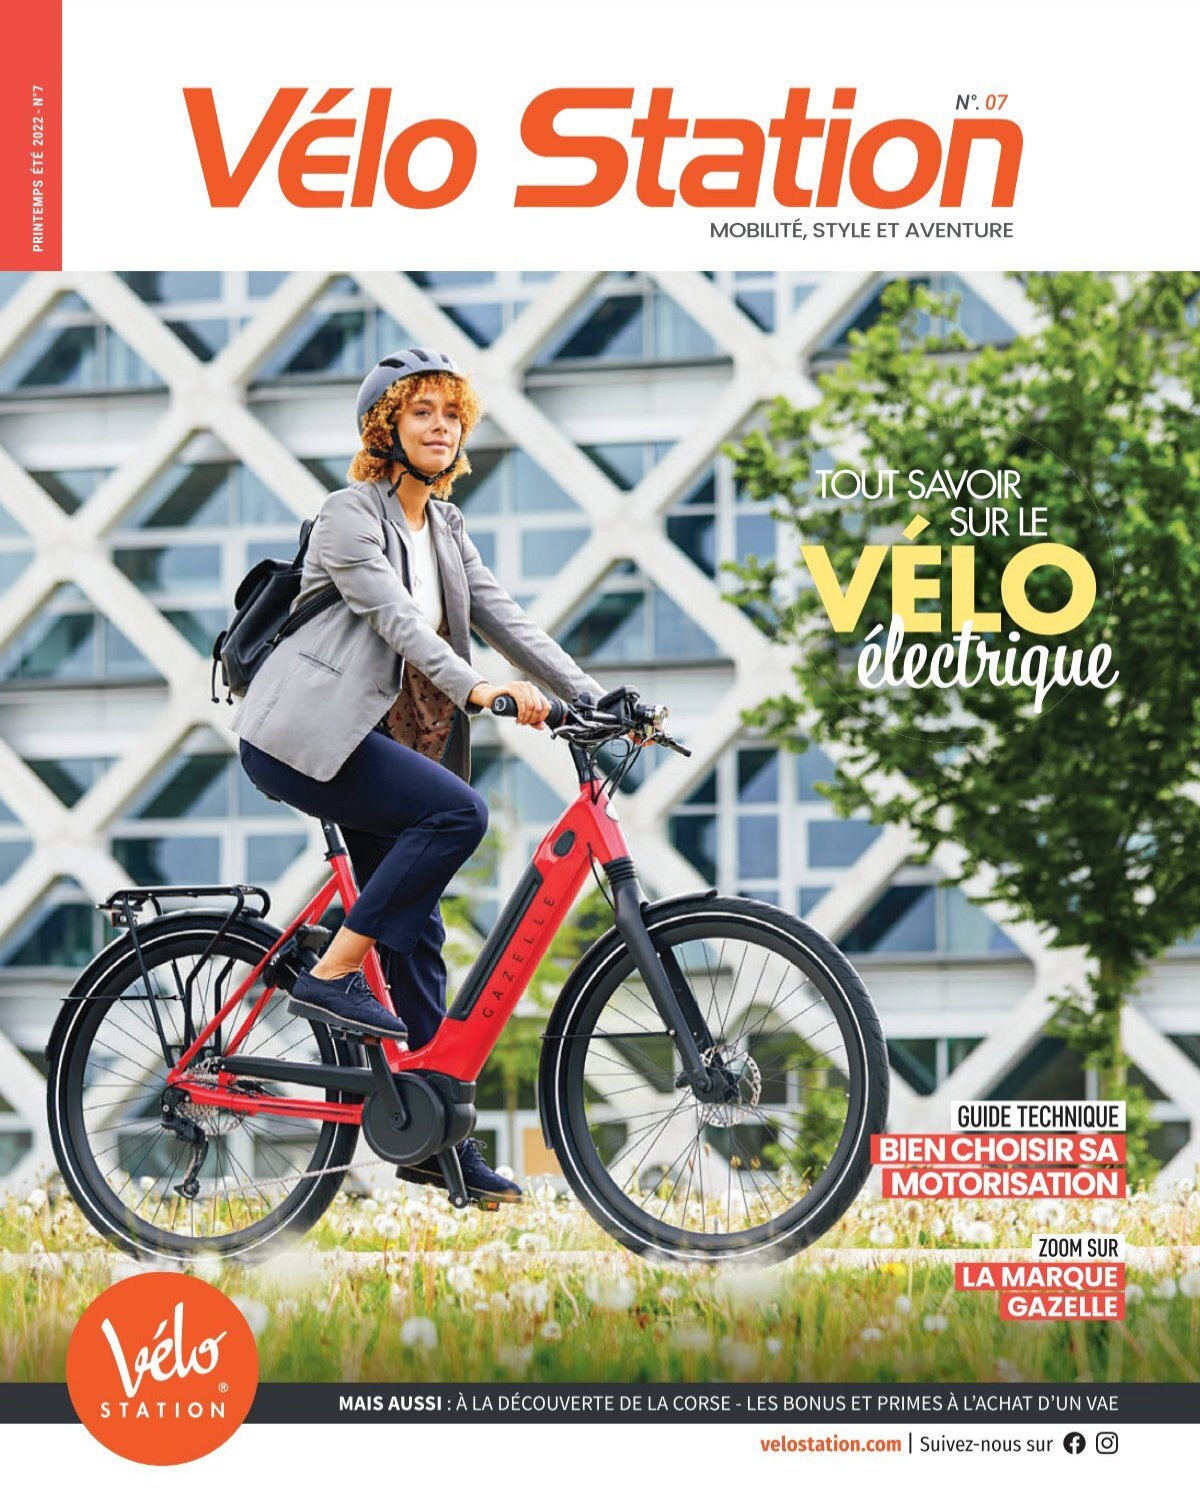 Triporteur transformable en vélo et poussette - Amsterdam Air